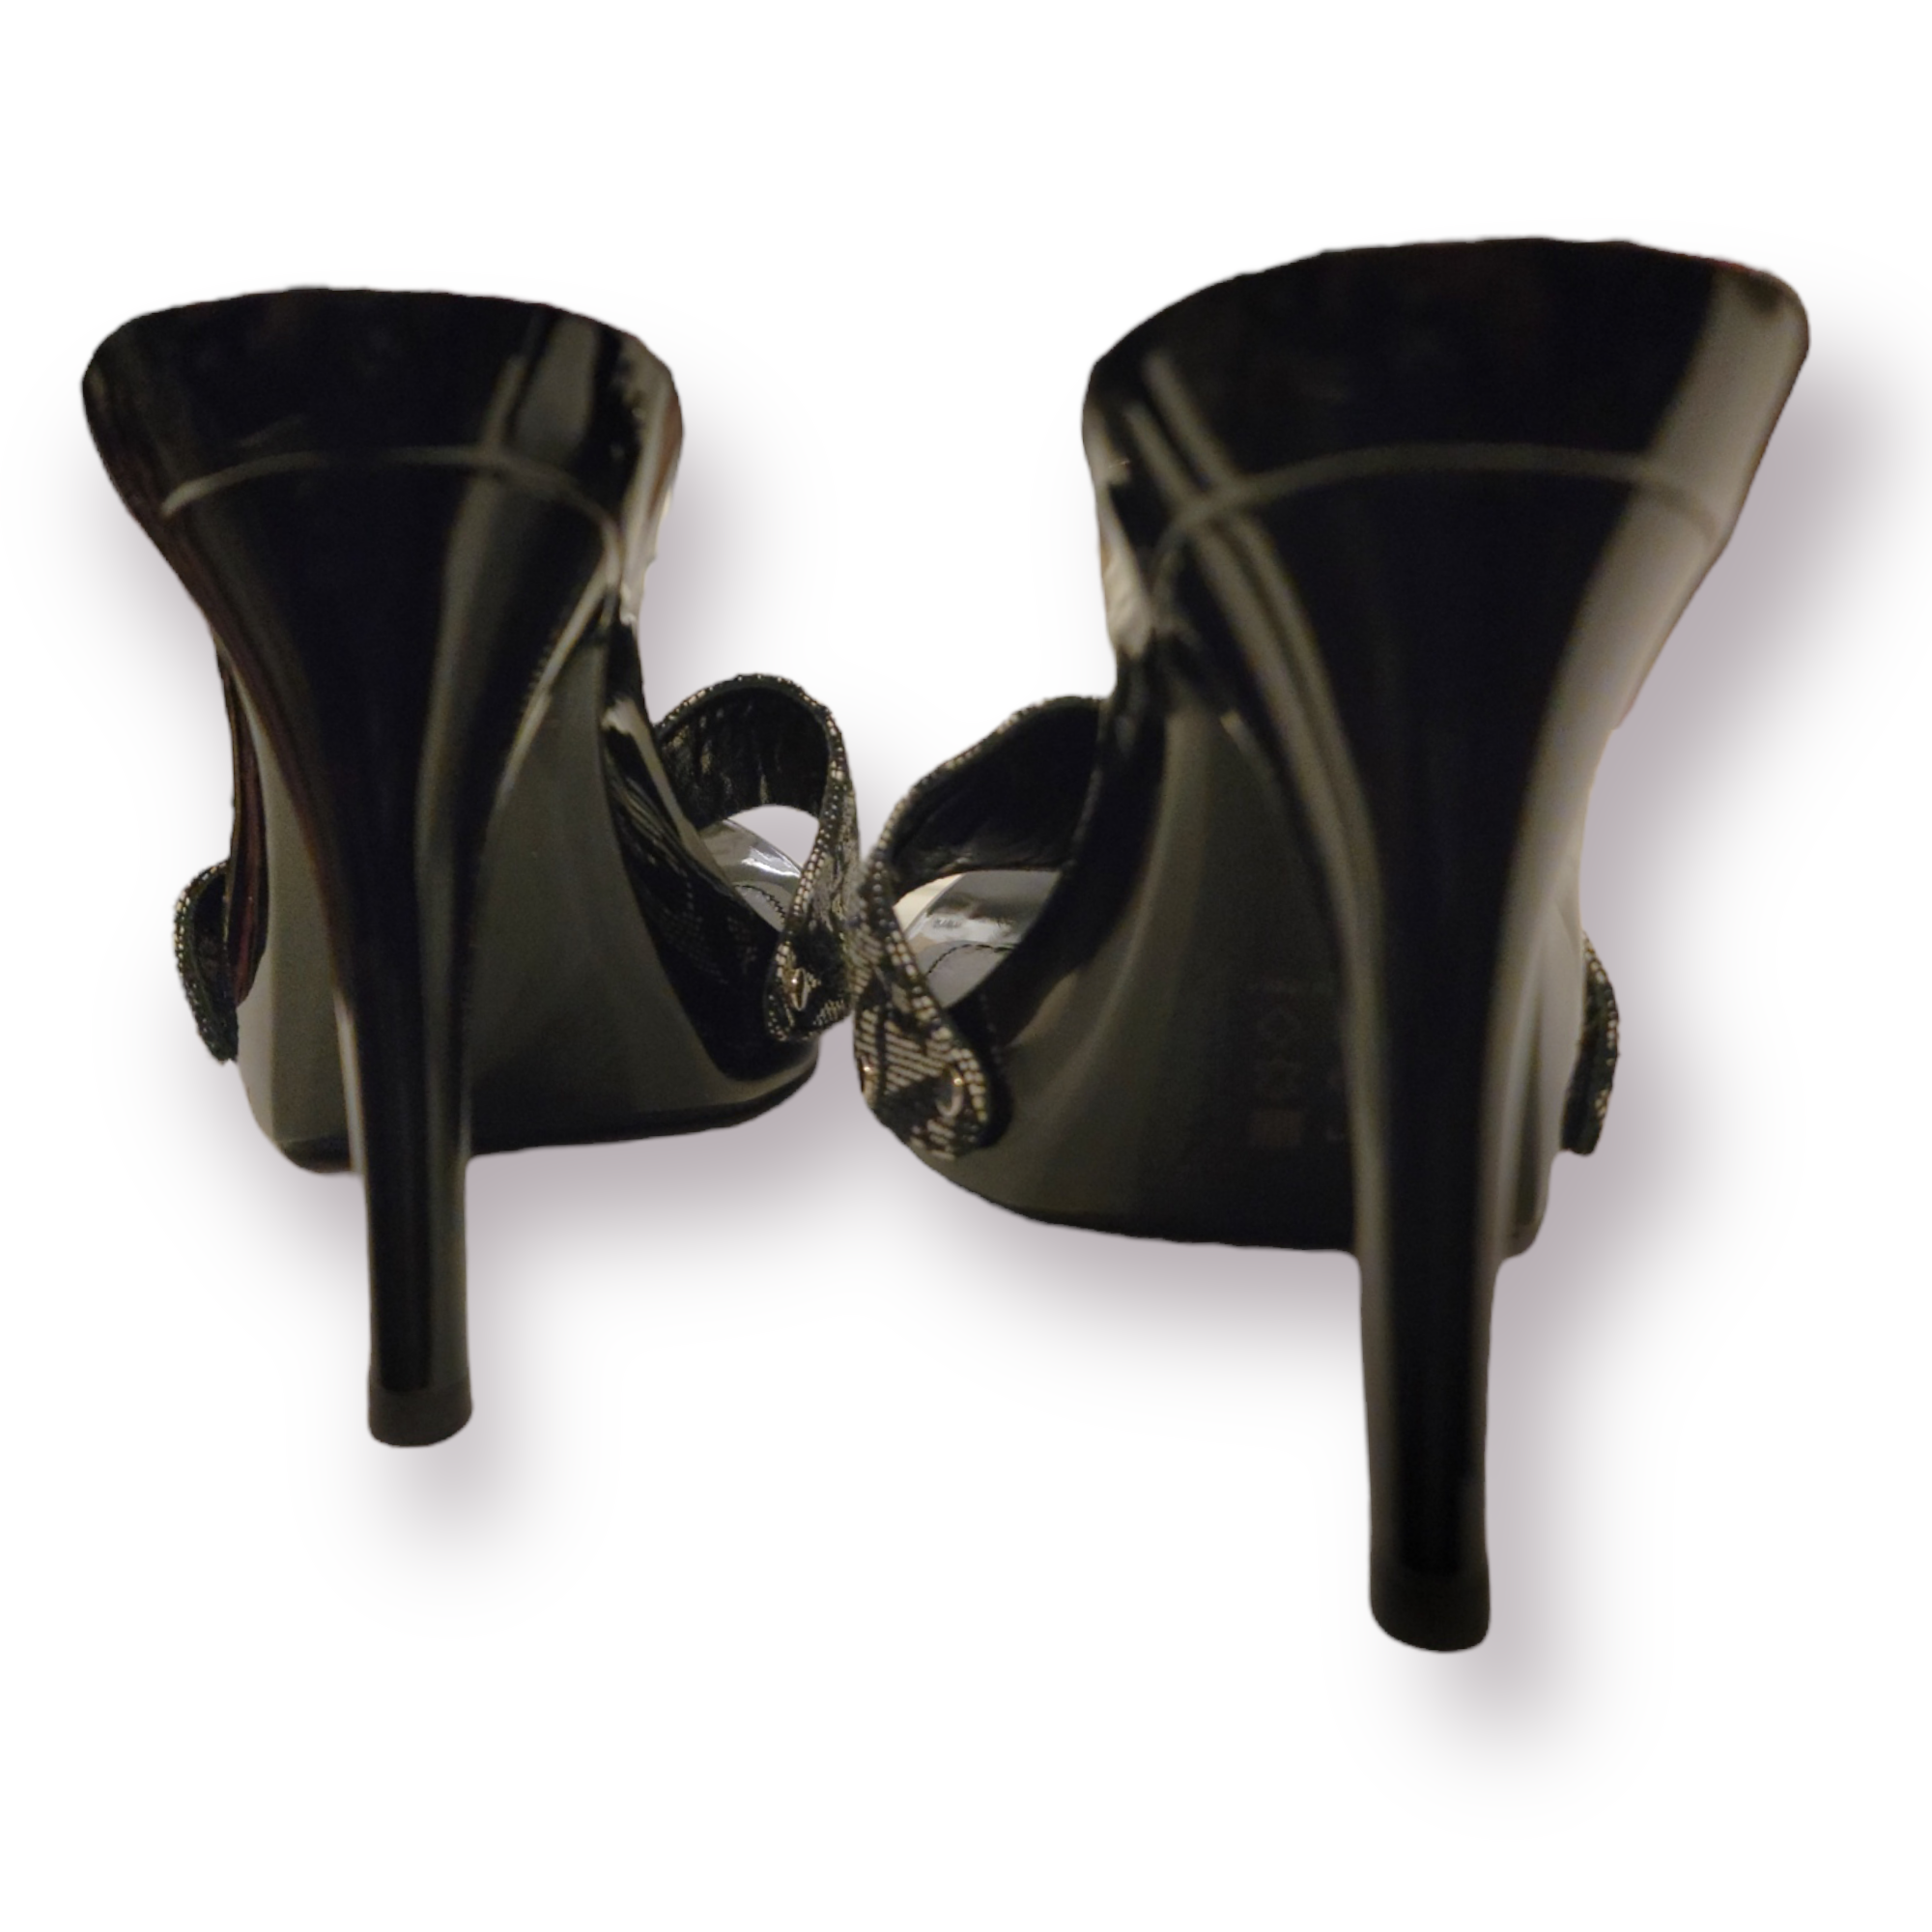 Louis Vuitton Womens Stiletto Pumps & Mules, Black, IT38.5